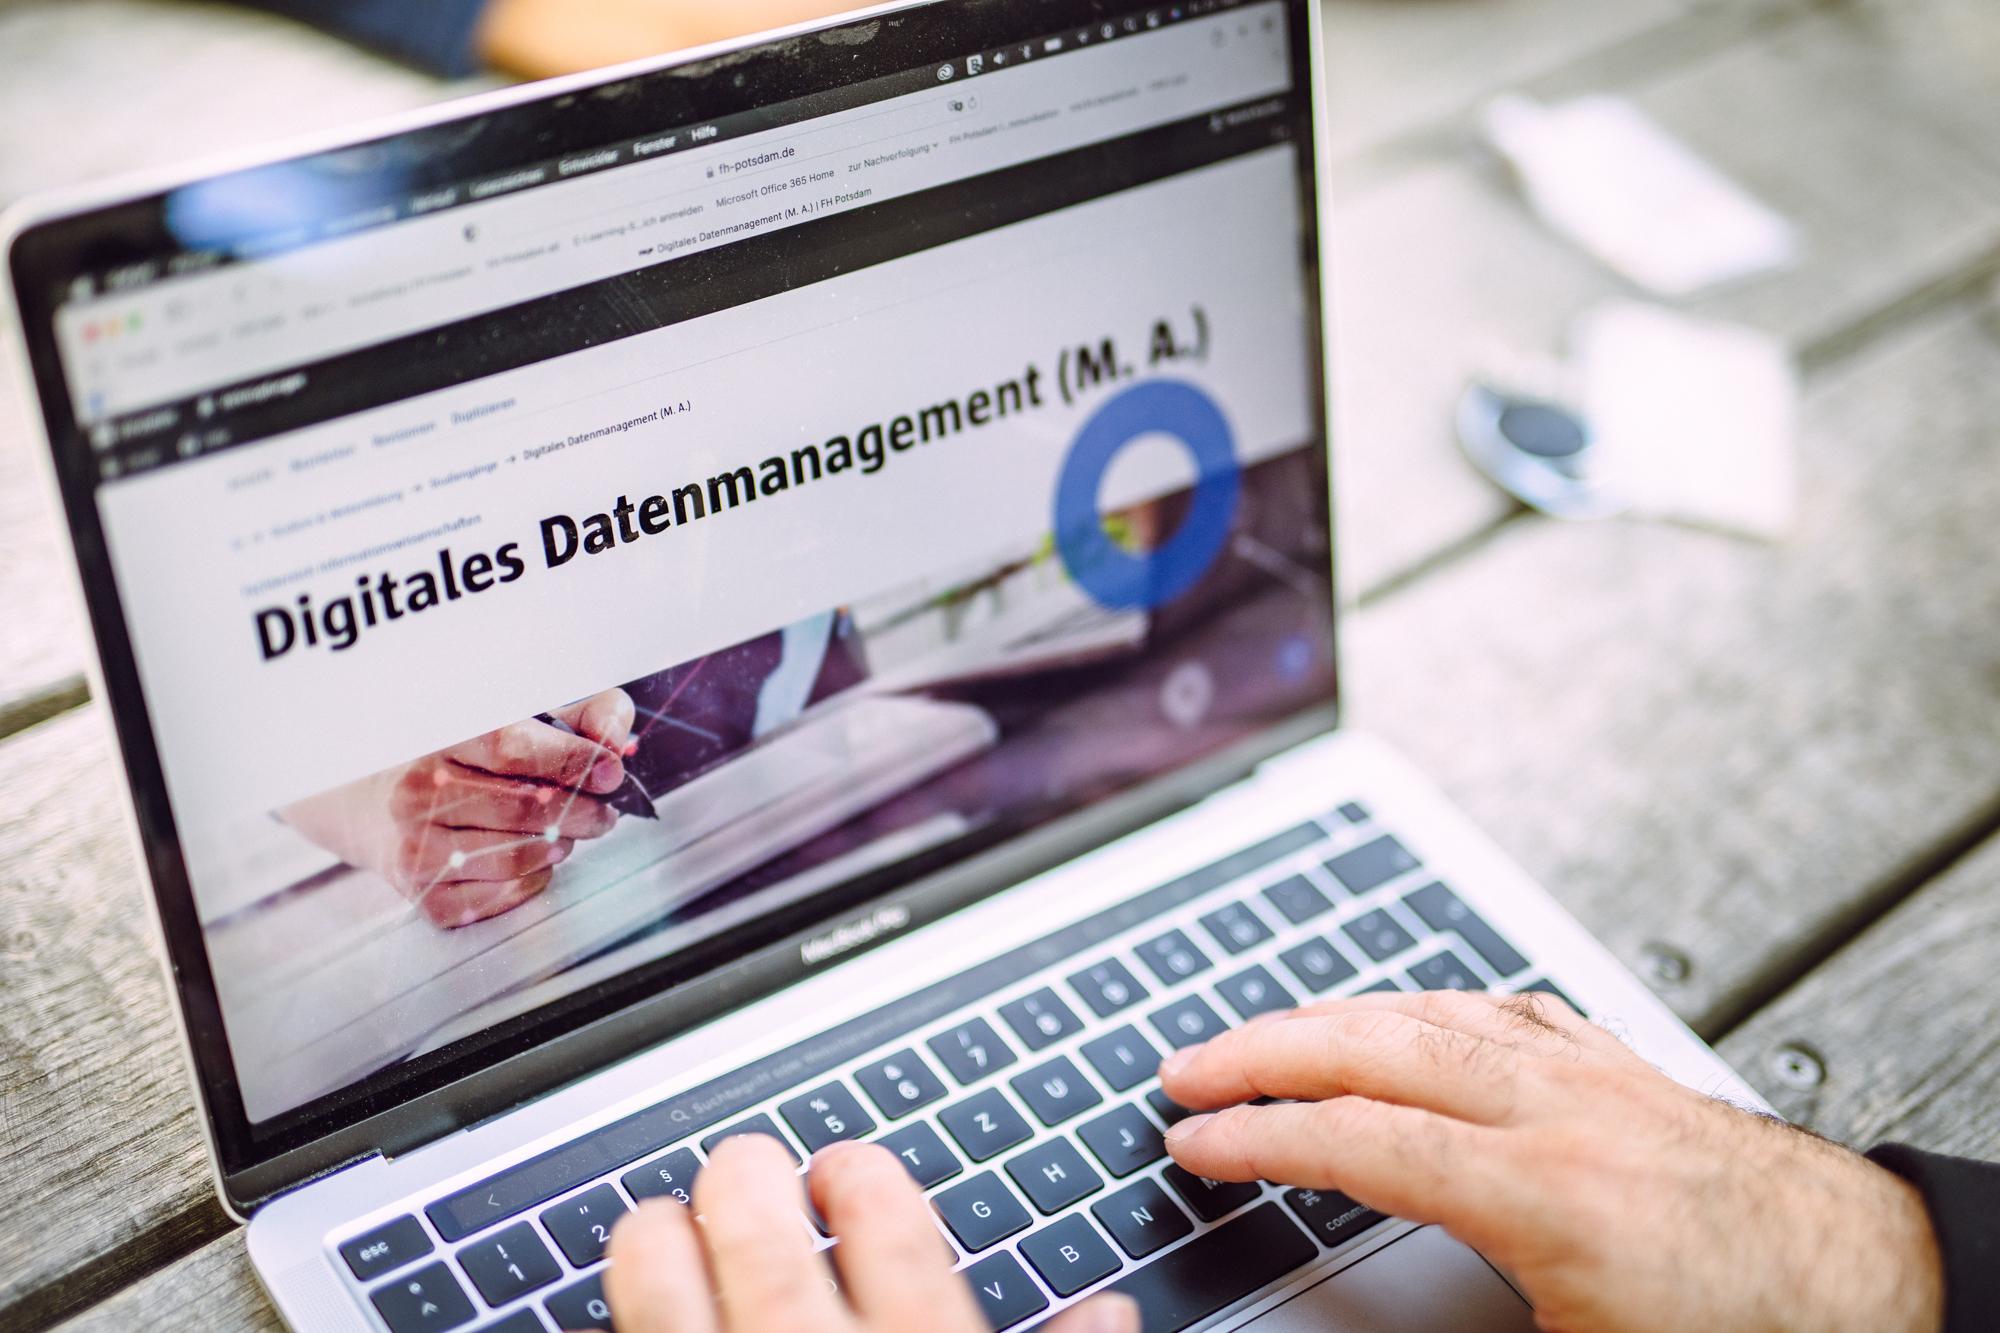 Hände auf Laptoptastatur im Internet ist die Website des weiterbildenden Masterstudiengangs Digitales Datenmanagement der Fachhochschule Potsdam aufgerufen